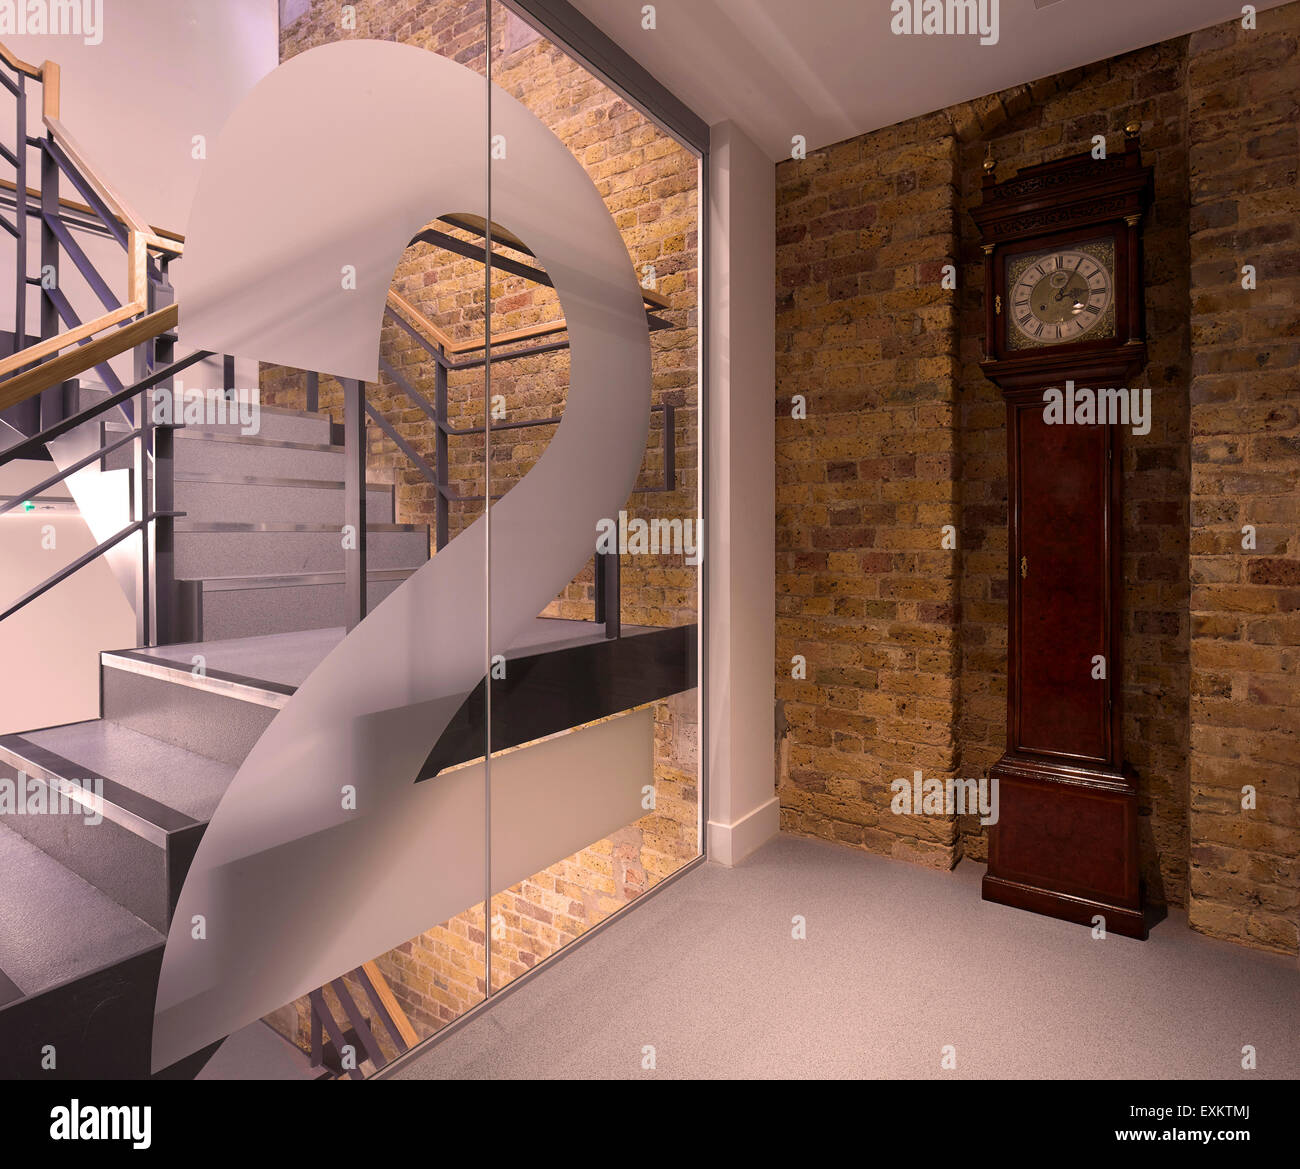 Treppe mit Podest. Königliche Hochschule der Augenärzte, London, Vereinigtes Königreich. Architekt: Bennetts Associates Architects, 20 Stockfoto